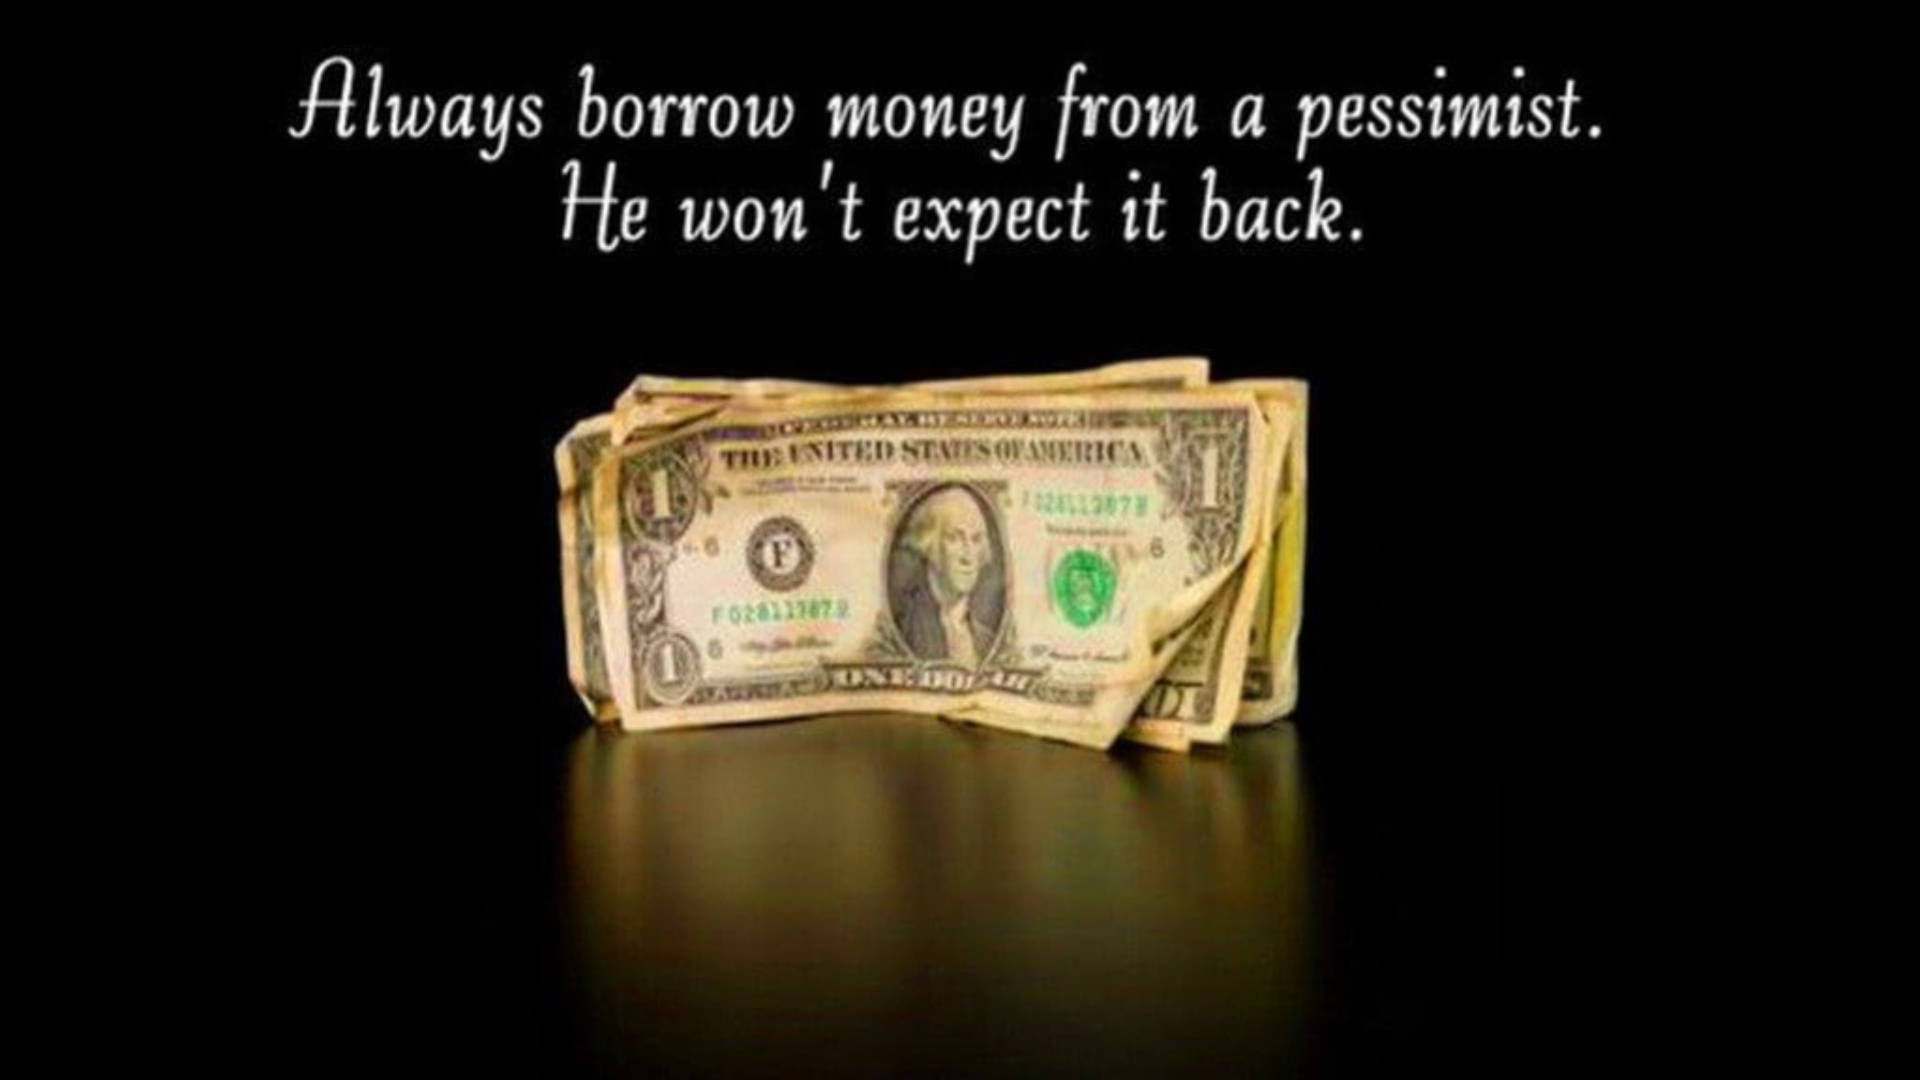 Pessimistic Money Background